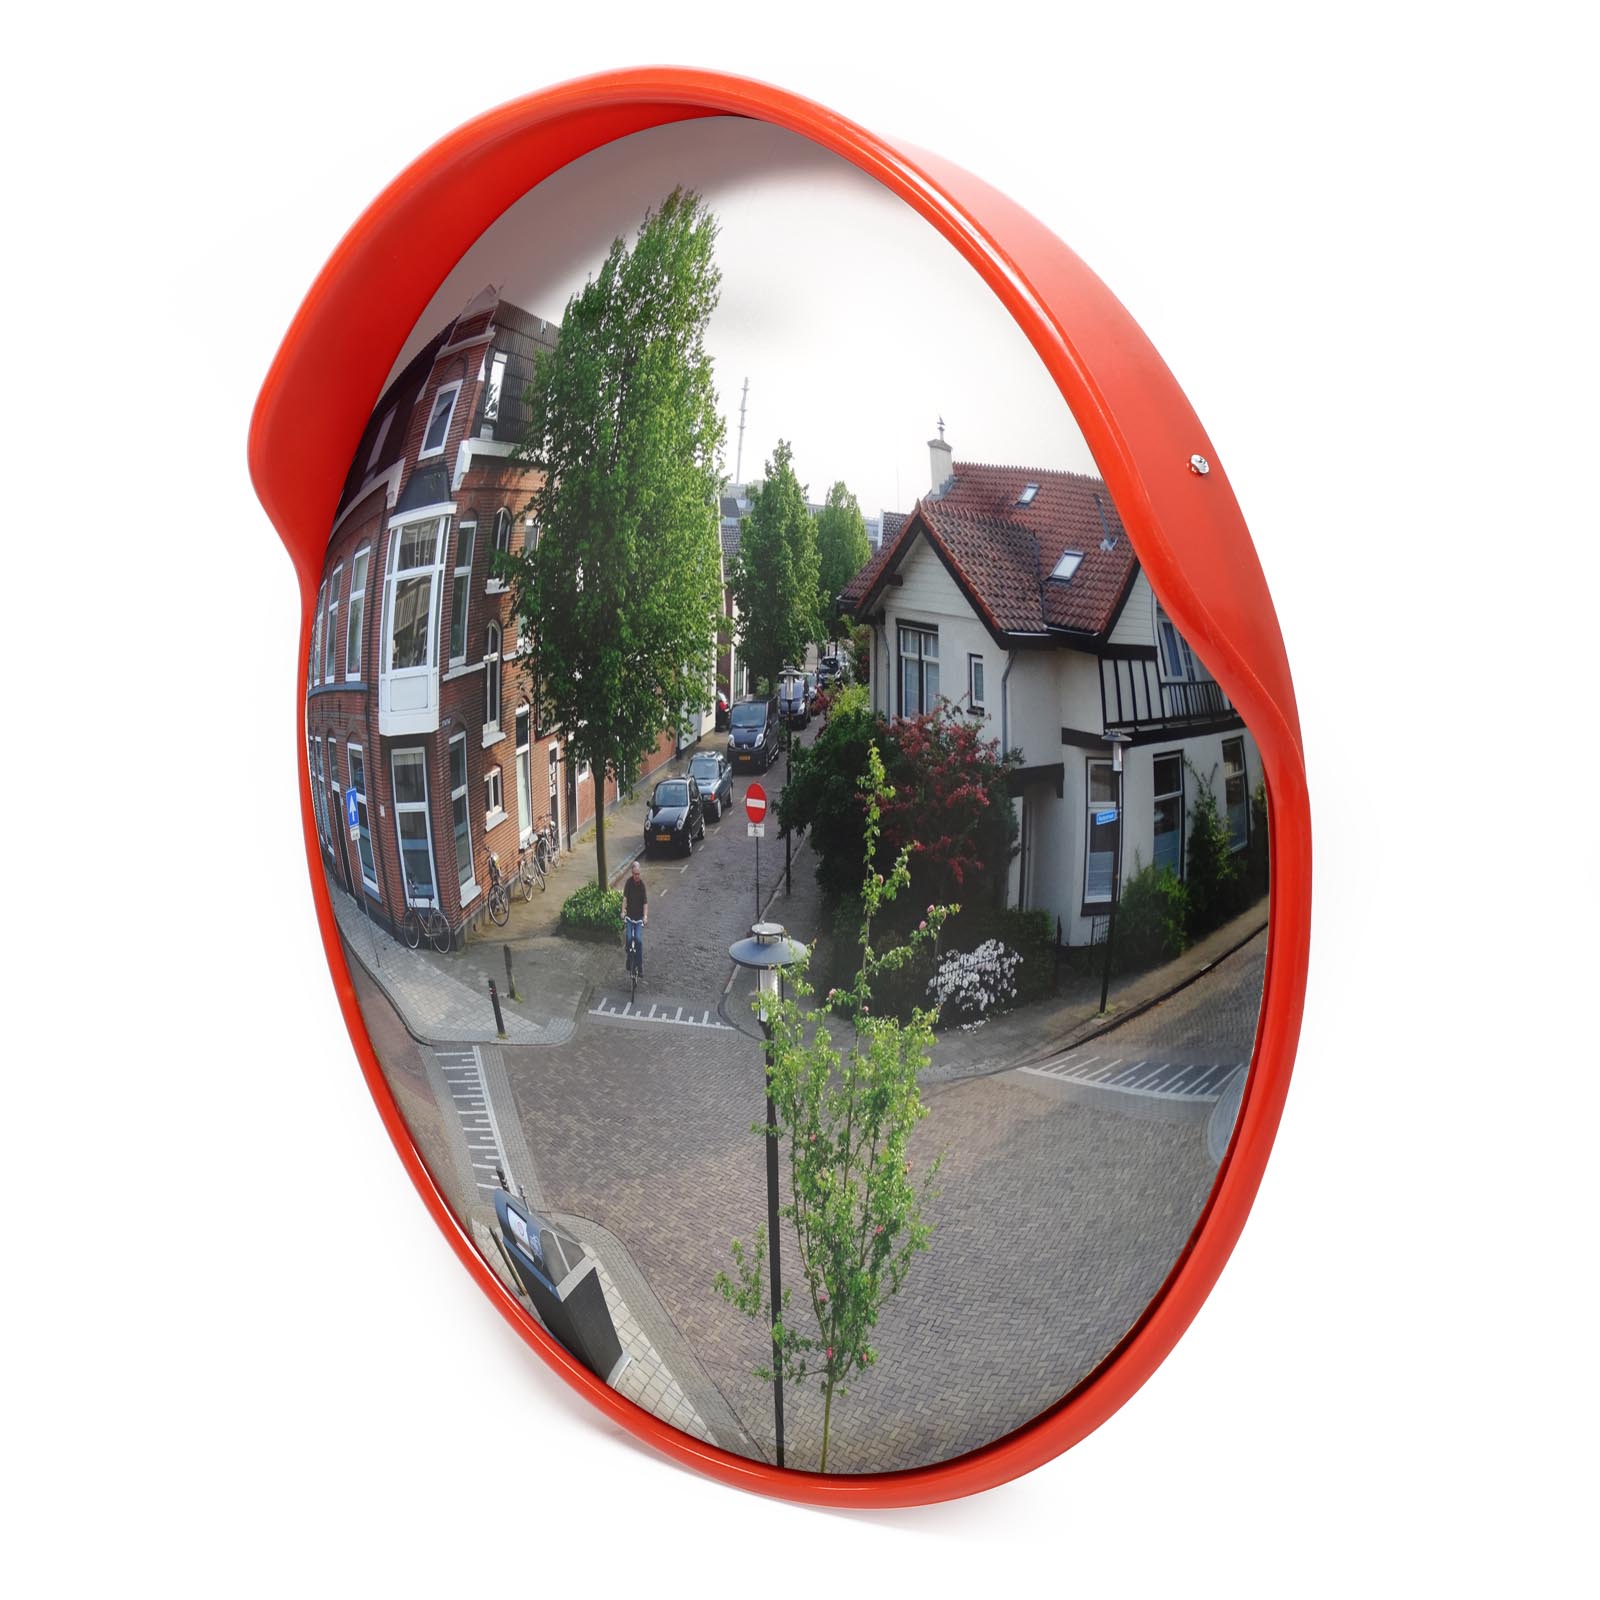 Specchio stradale parabolico infrangibile con cupolino in plastica diametro 60  cm. compreso di staffa per palo mod. SPECCHIO60. - Wegher